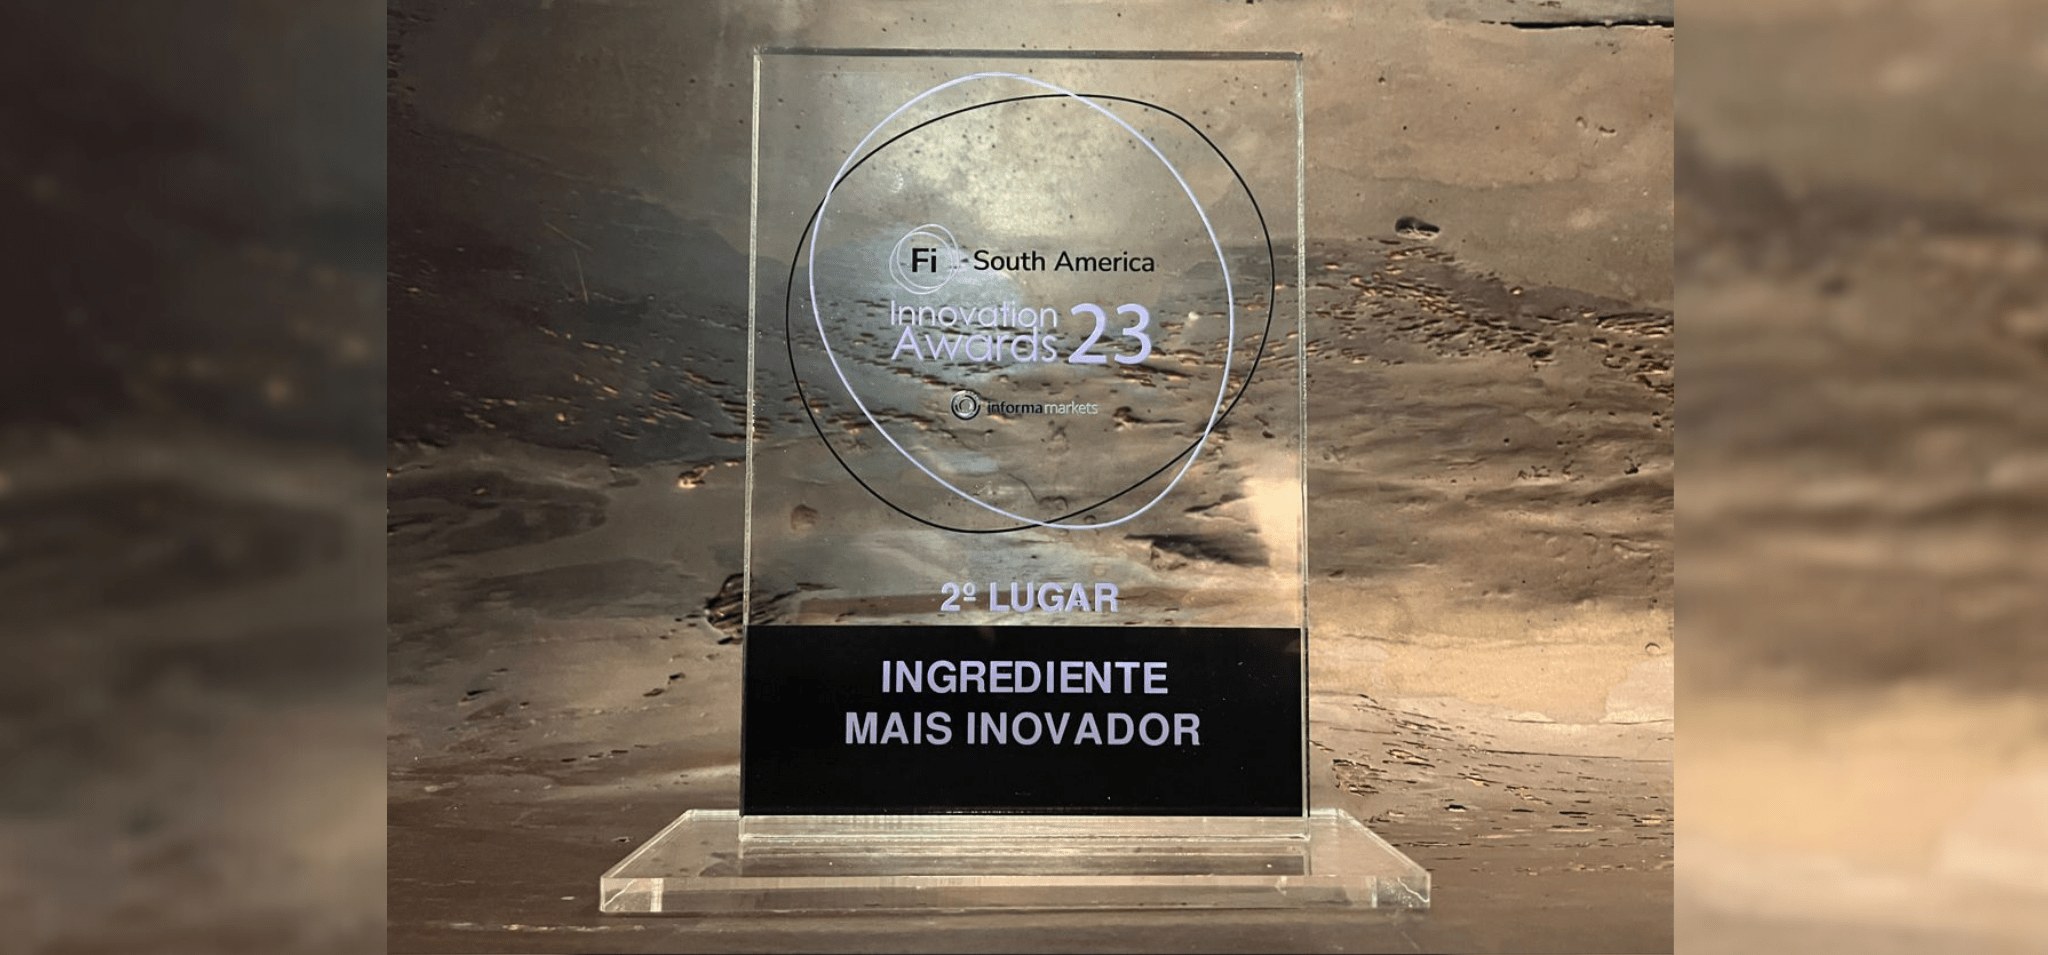 Troféu de acrílico com o nome do prêmio, a colocação (2º lugar) e a categoria (Ingrediente mais inovador). Fim da descrição